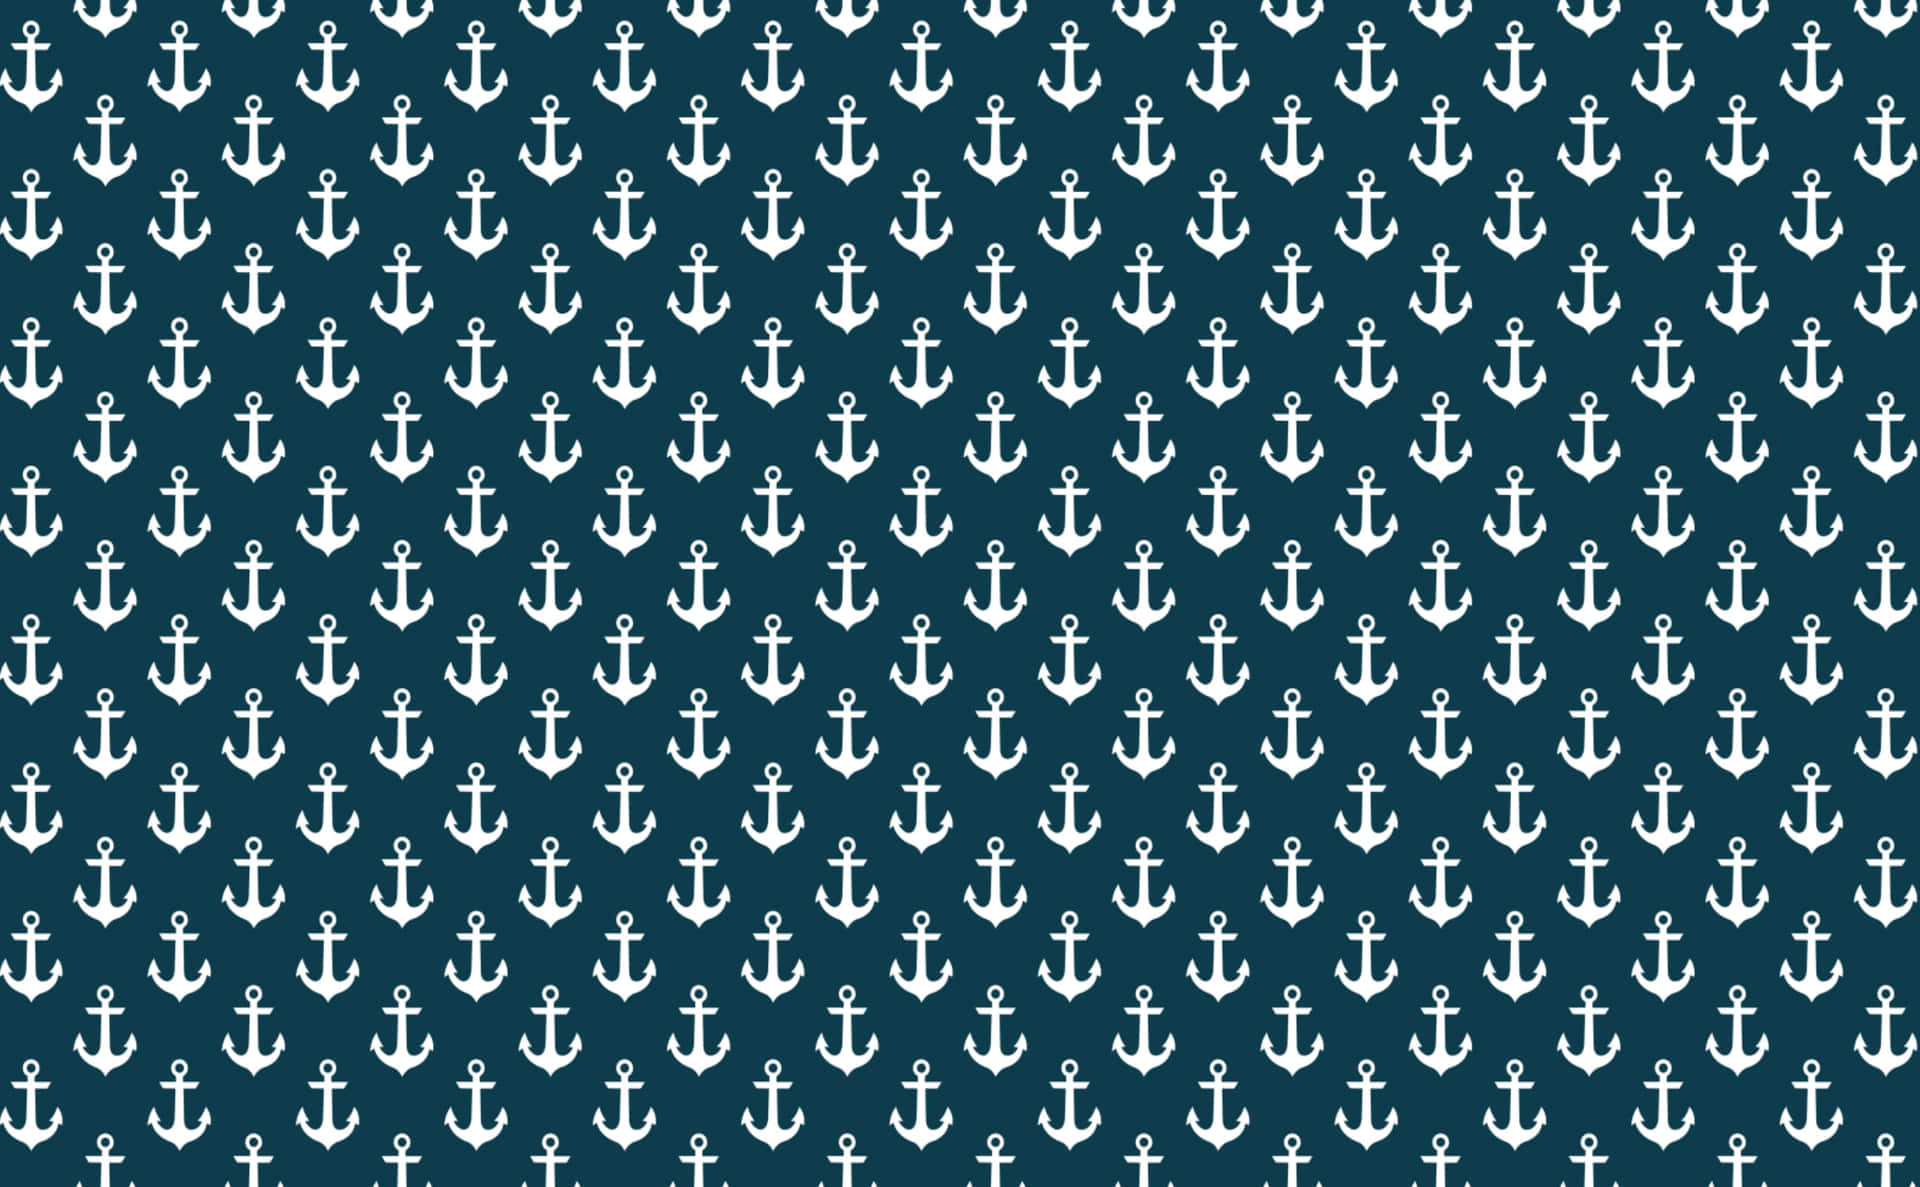 anchor wallpaper